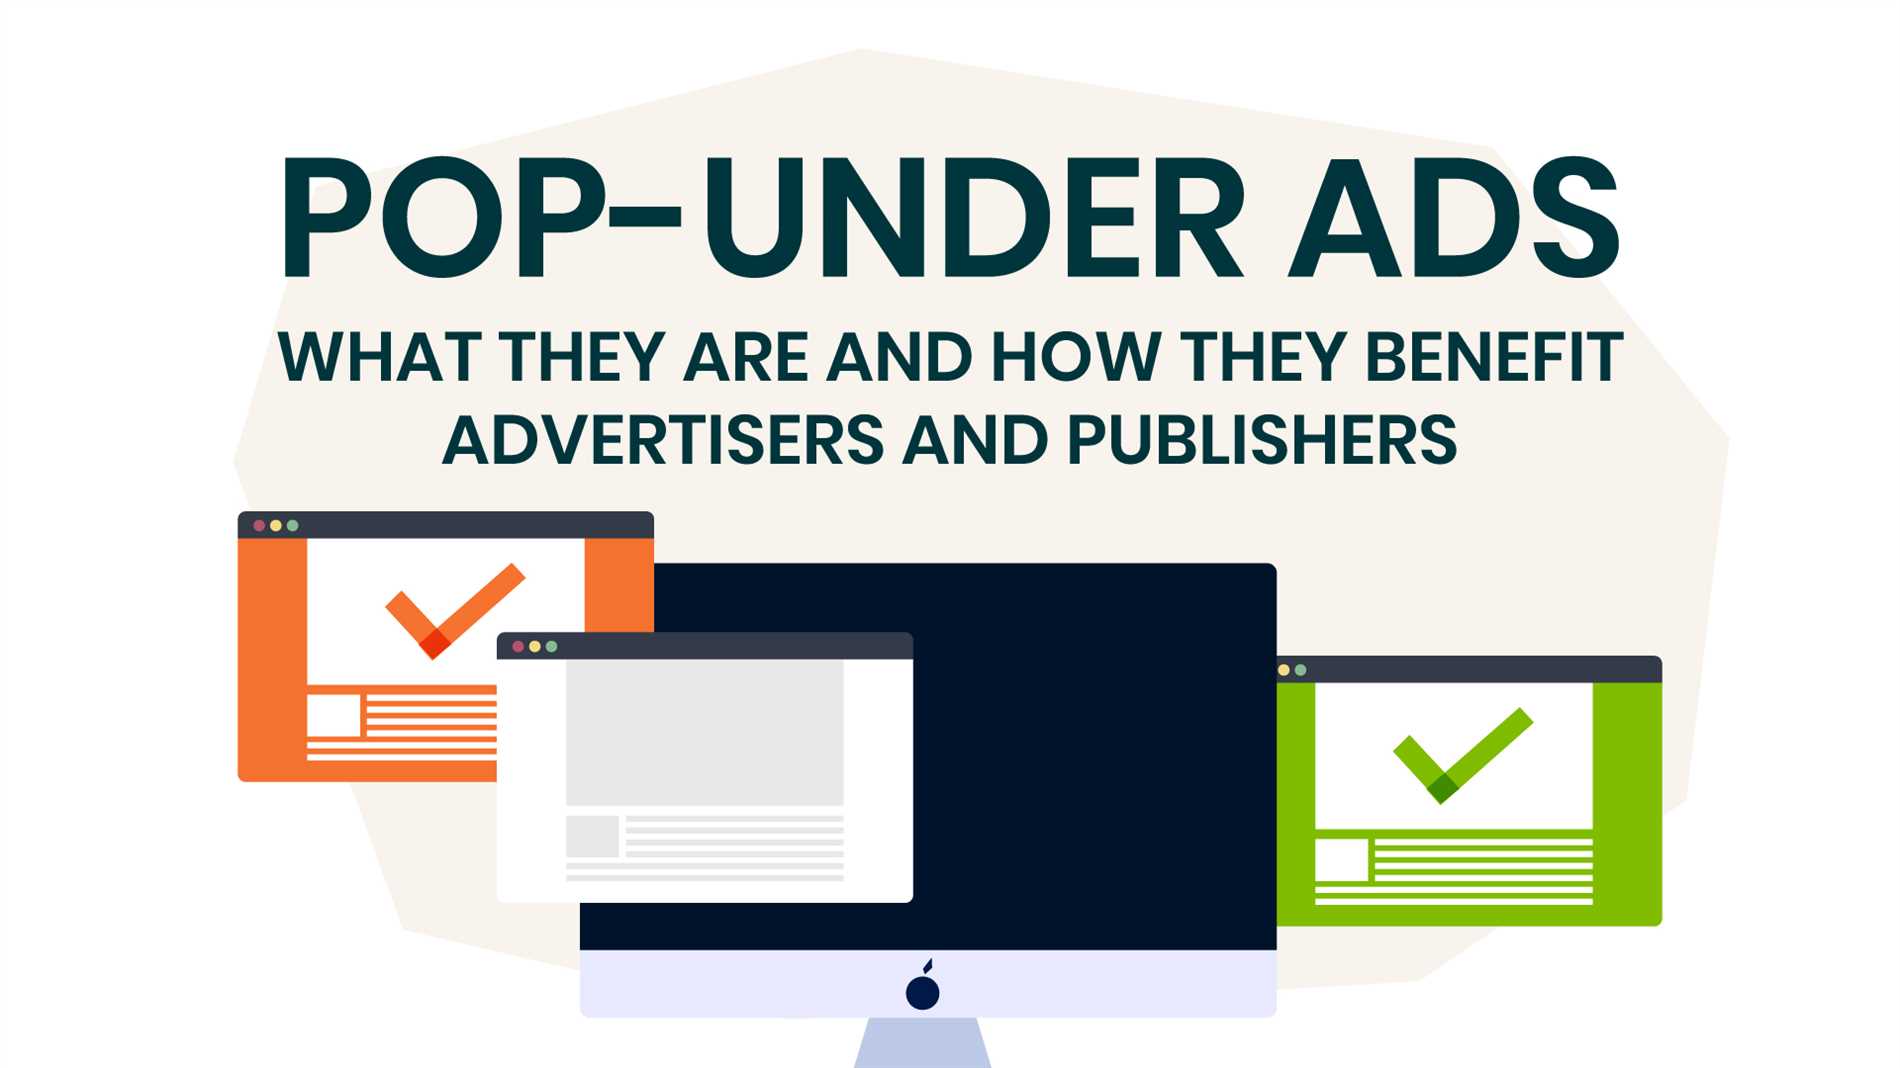 効果的な広告でウェブサイトのトラフィックを増やすためにPoPアンダー広告を購入しましょう。